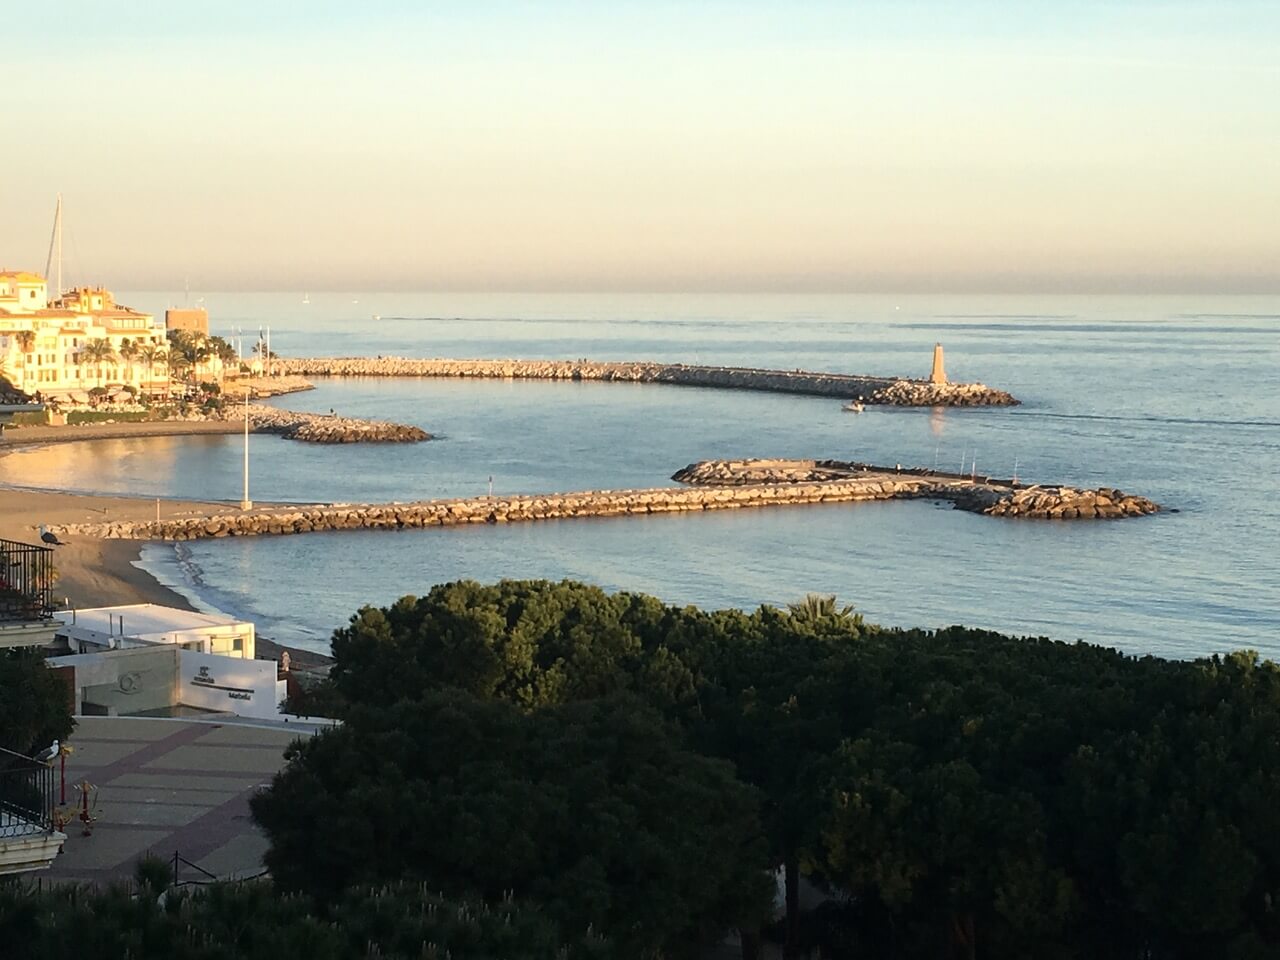 Puerto Banus - Marbella